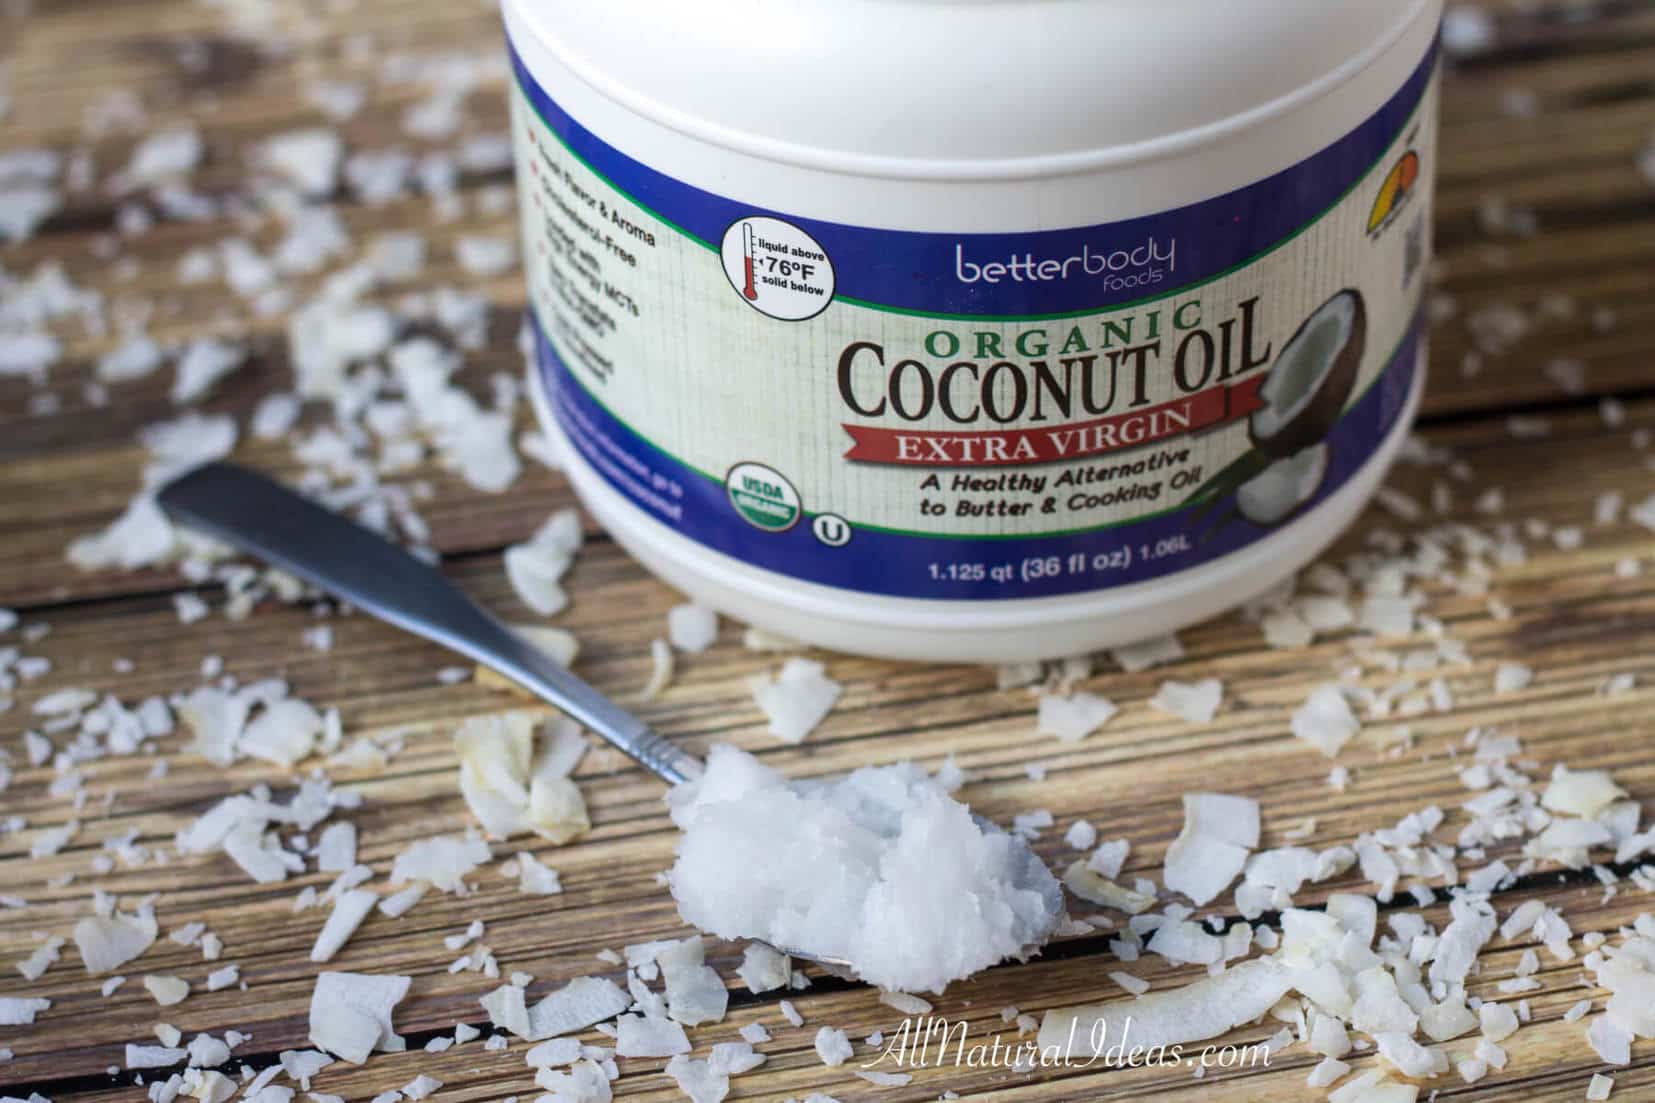 Top 5 Health Benefits of Coconut Oil